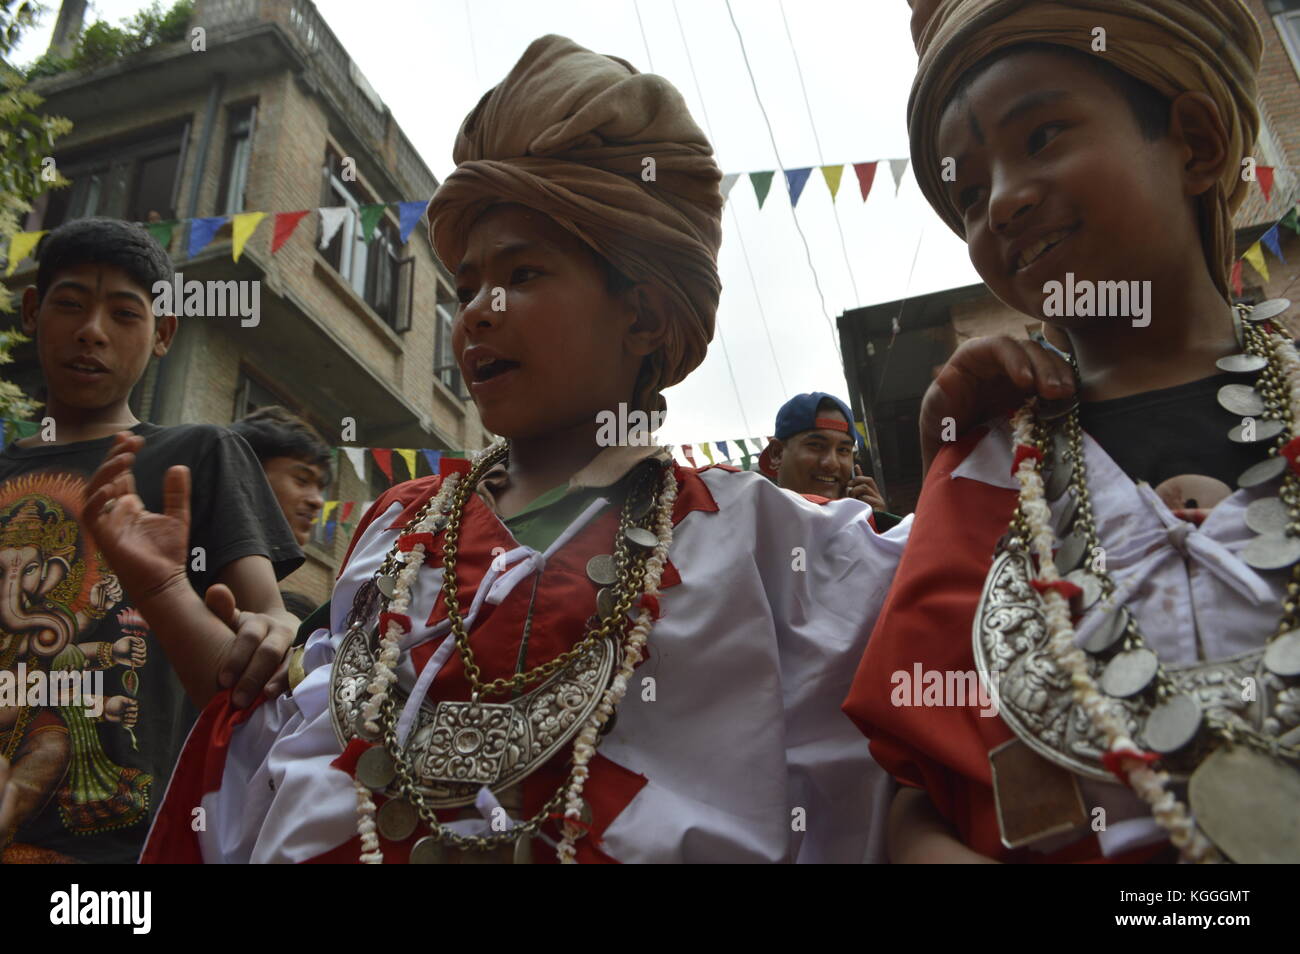 Kleine Götter, Kinder mit hindu-schwarzem Streifen auf der Stirn. Jatra-Festival mit Tiersacifice in Panauti, Nepal. Junge, der den Arm gottes hält. Stockfoto